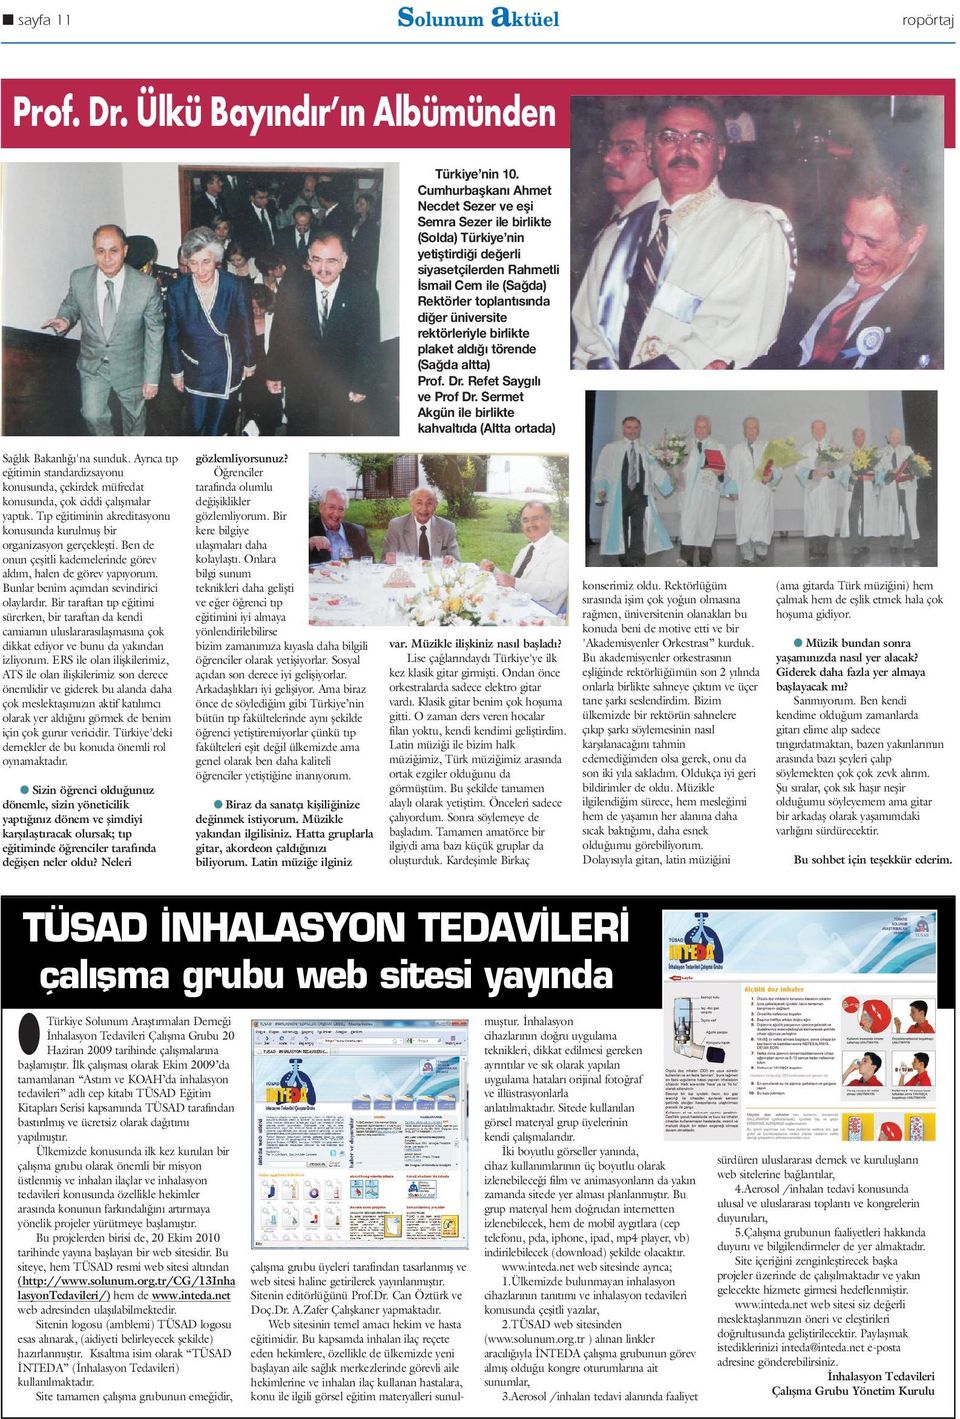 rektörleriyle birlikte plaket aldığı törende (Sağda altta) Prof. Dr. Refet Saygılı ve Prof Dr. Sermet Akgün ile birlikte kahvaltıda (Altta ortada) Sa l k Bakanl 'na sunduk.